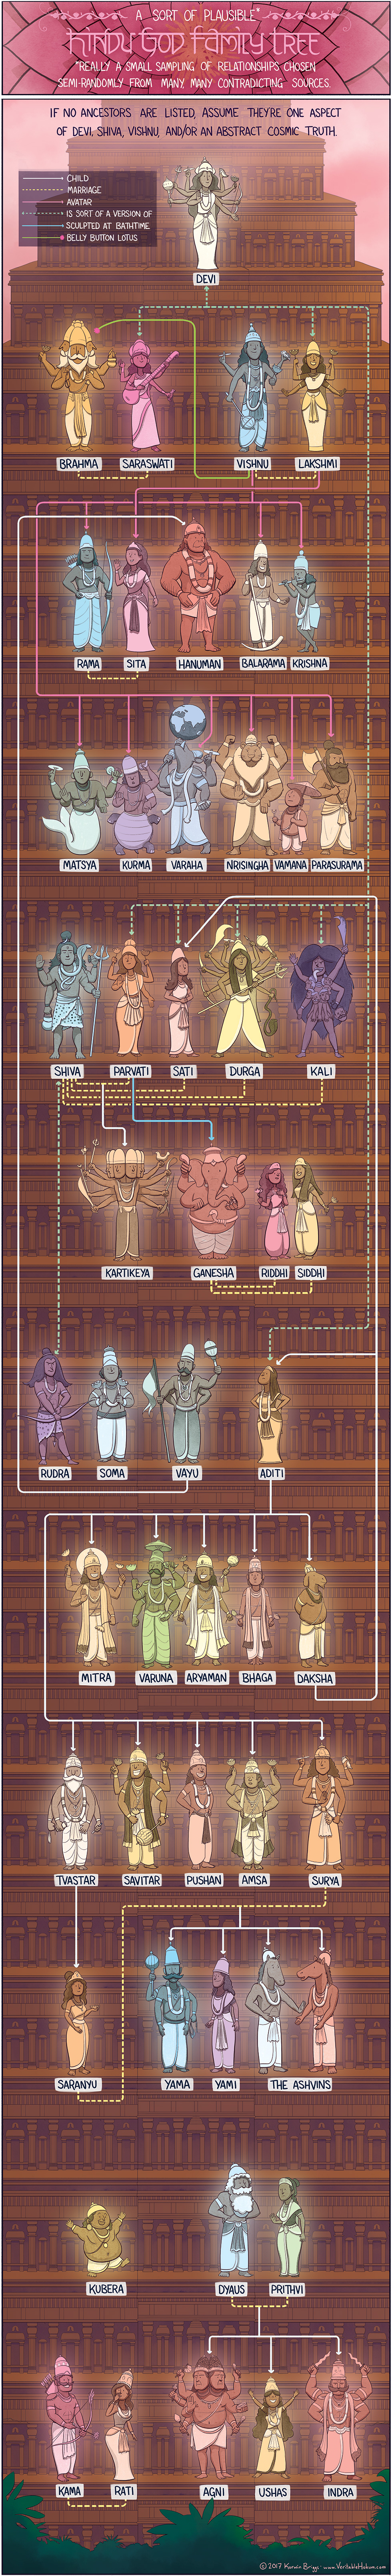 shinto gods family tree